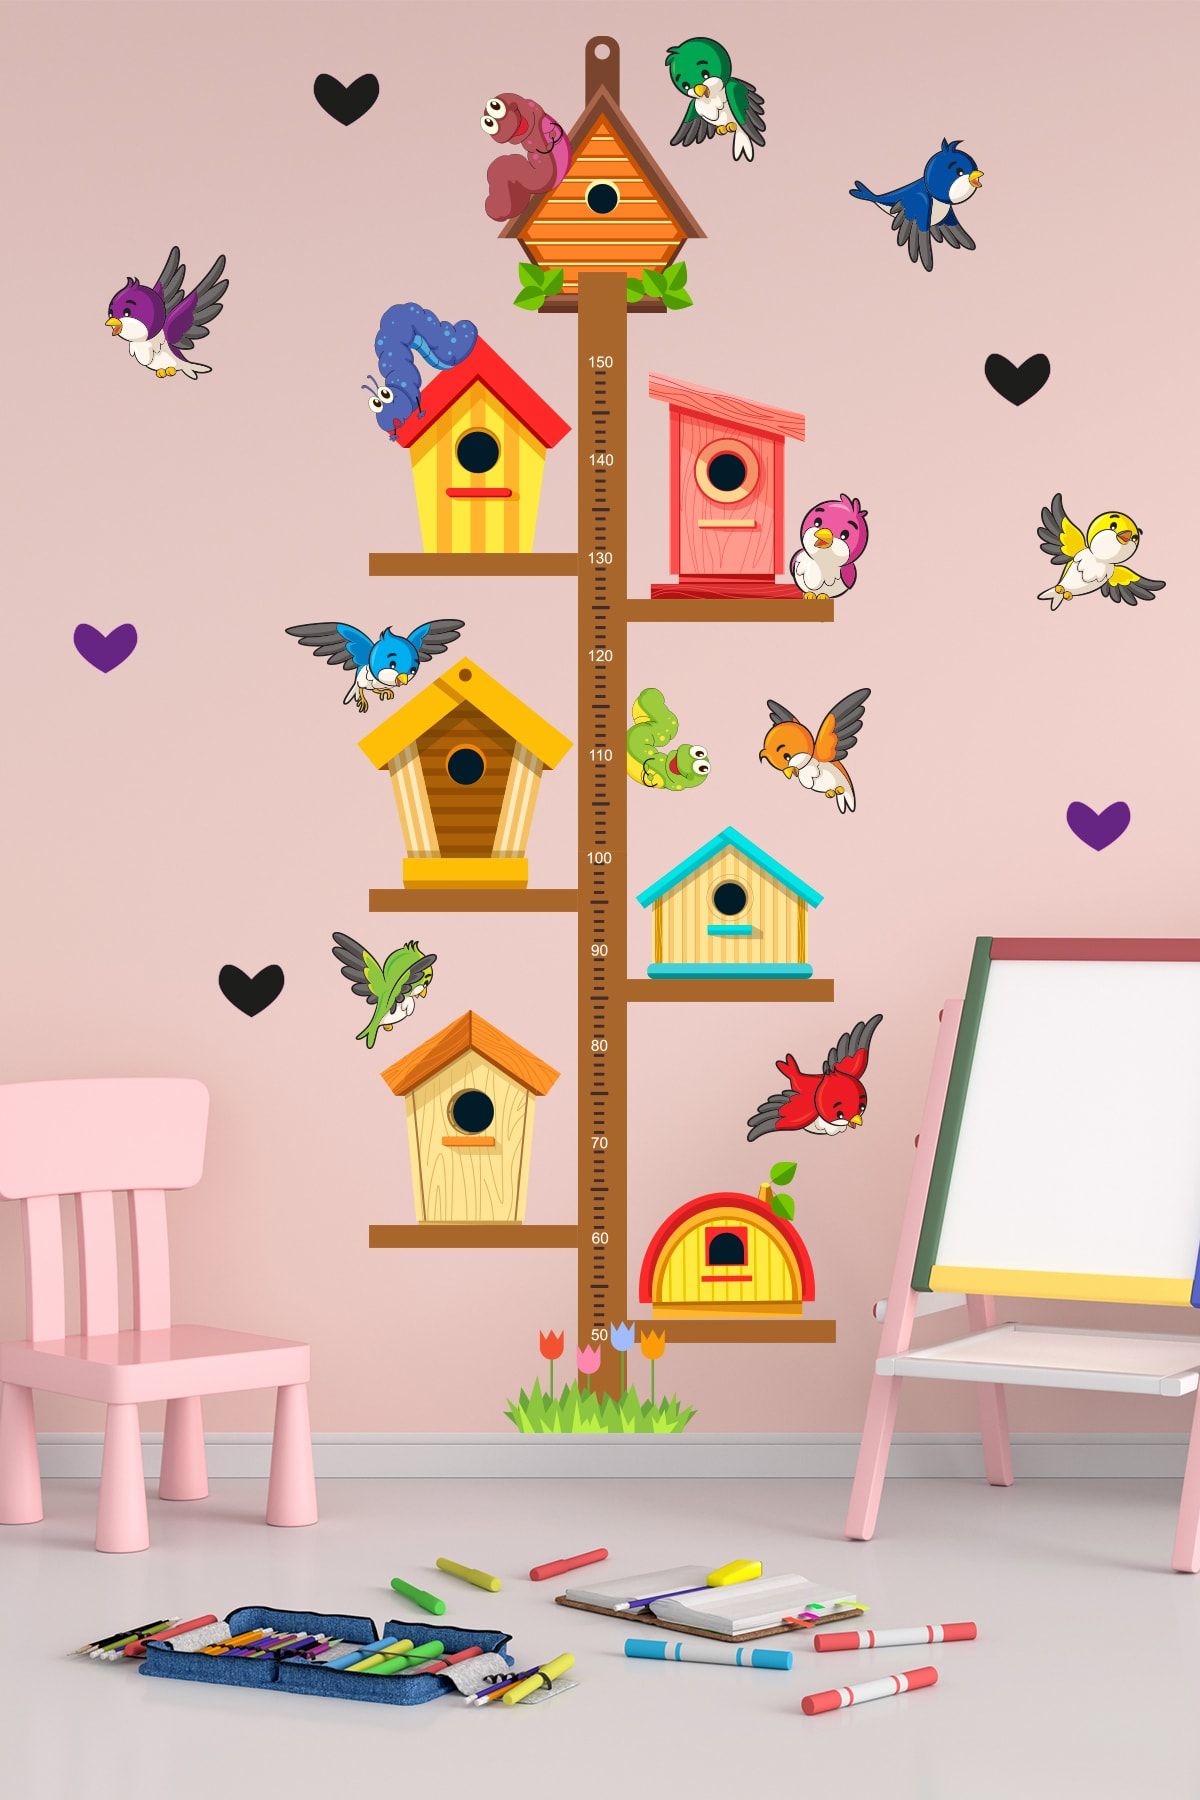 Tilki Dünyası Sevimli Kuş Evleri Boy Cetveli Çocuk Odası Sticker